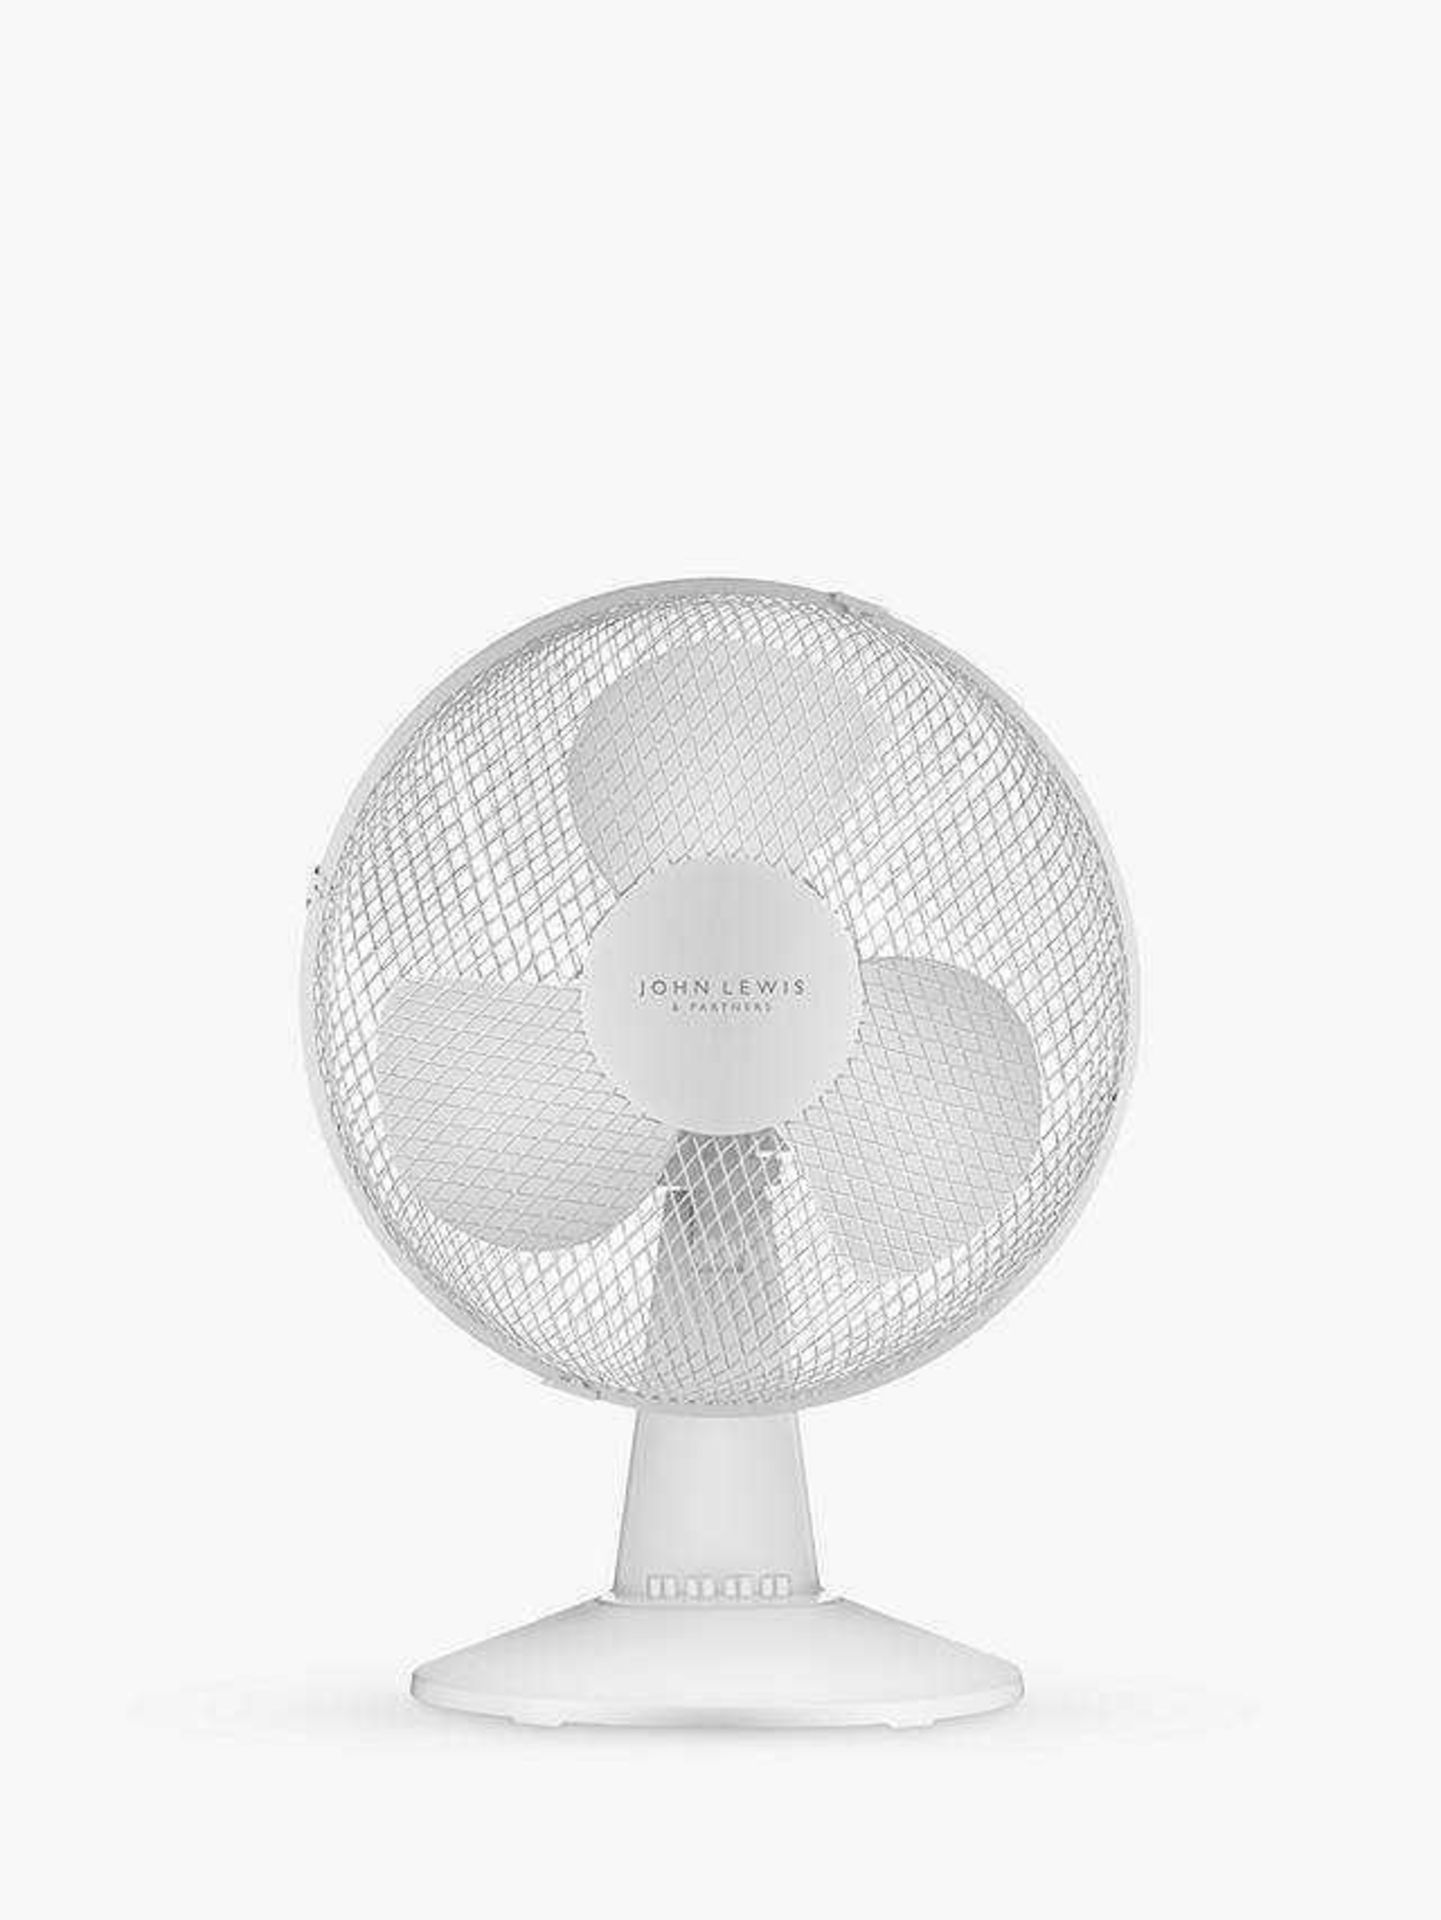 RRP £150 Lot To Contain 3 Items To Include Oscillating Tower Fan, 16" Pedestal Fan, 12" Desk Fan(3Bo